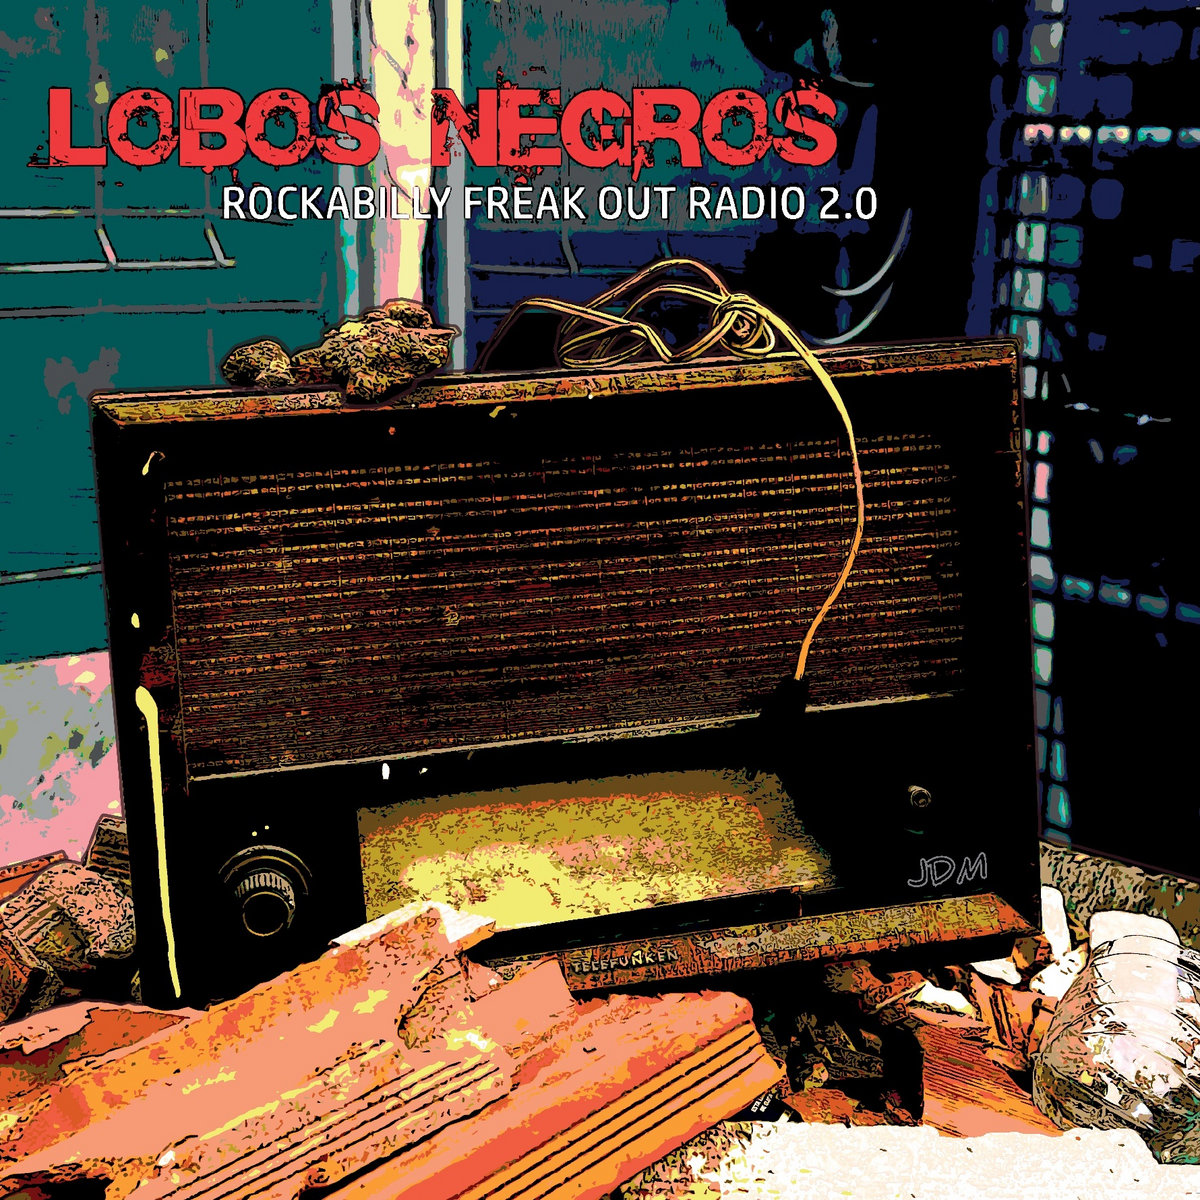 Rockabilly freak out radio 2.0 | Lobos Negros